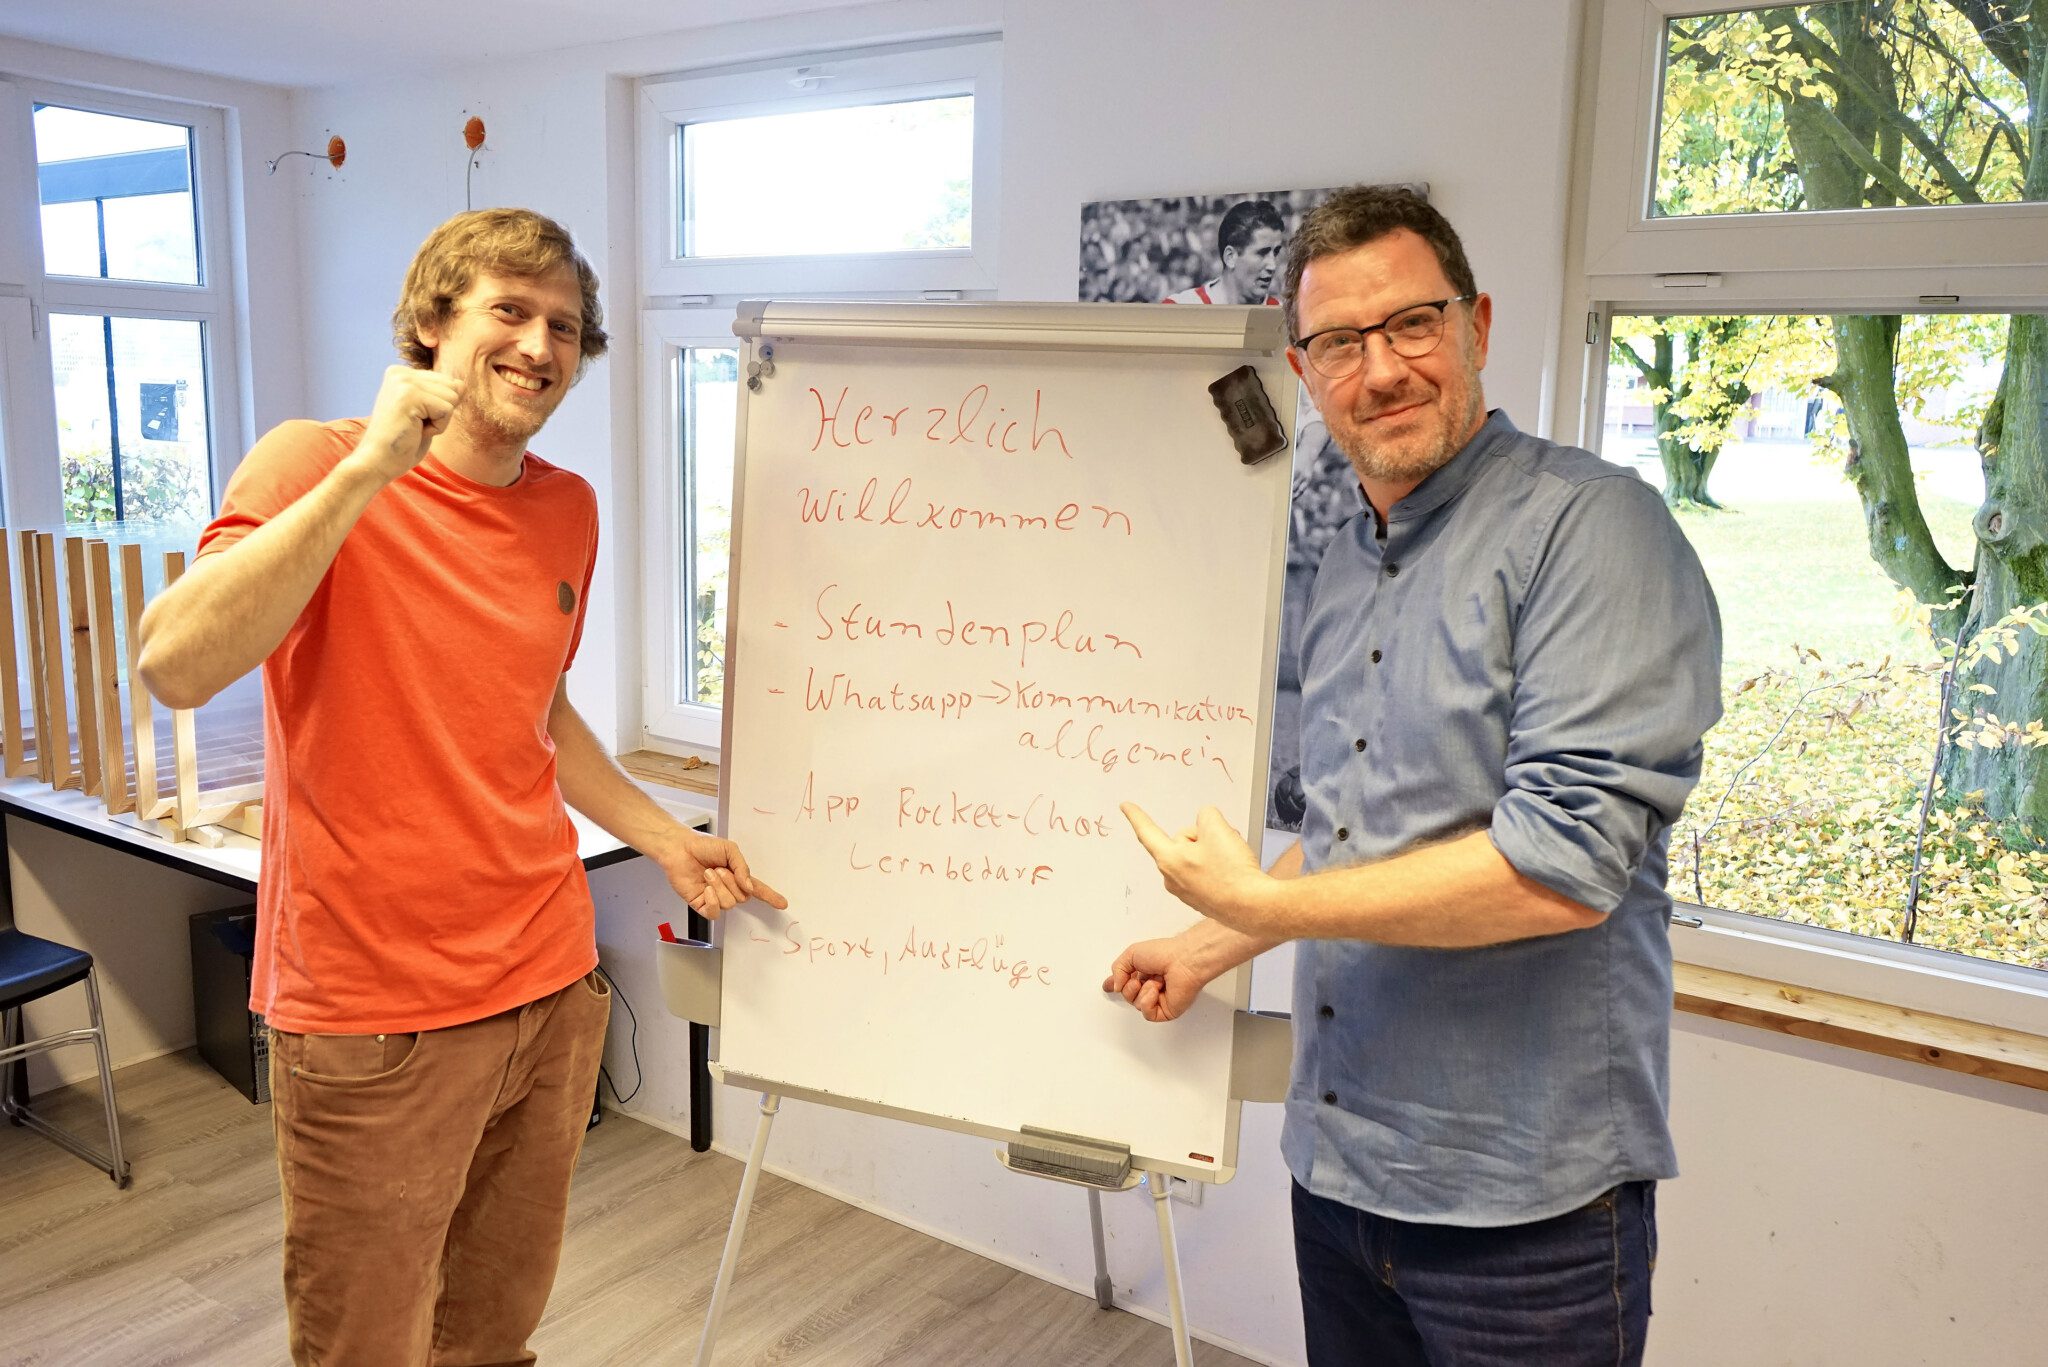 Essener-Chancen-Projekt: "Bessermacher" 2.0 am Start! – Rot-Weiss Essen